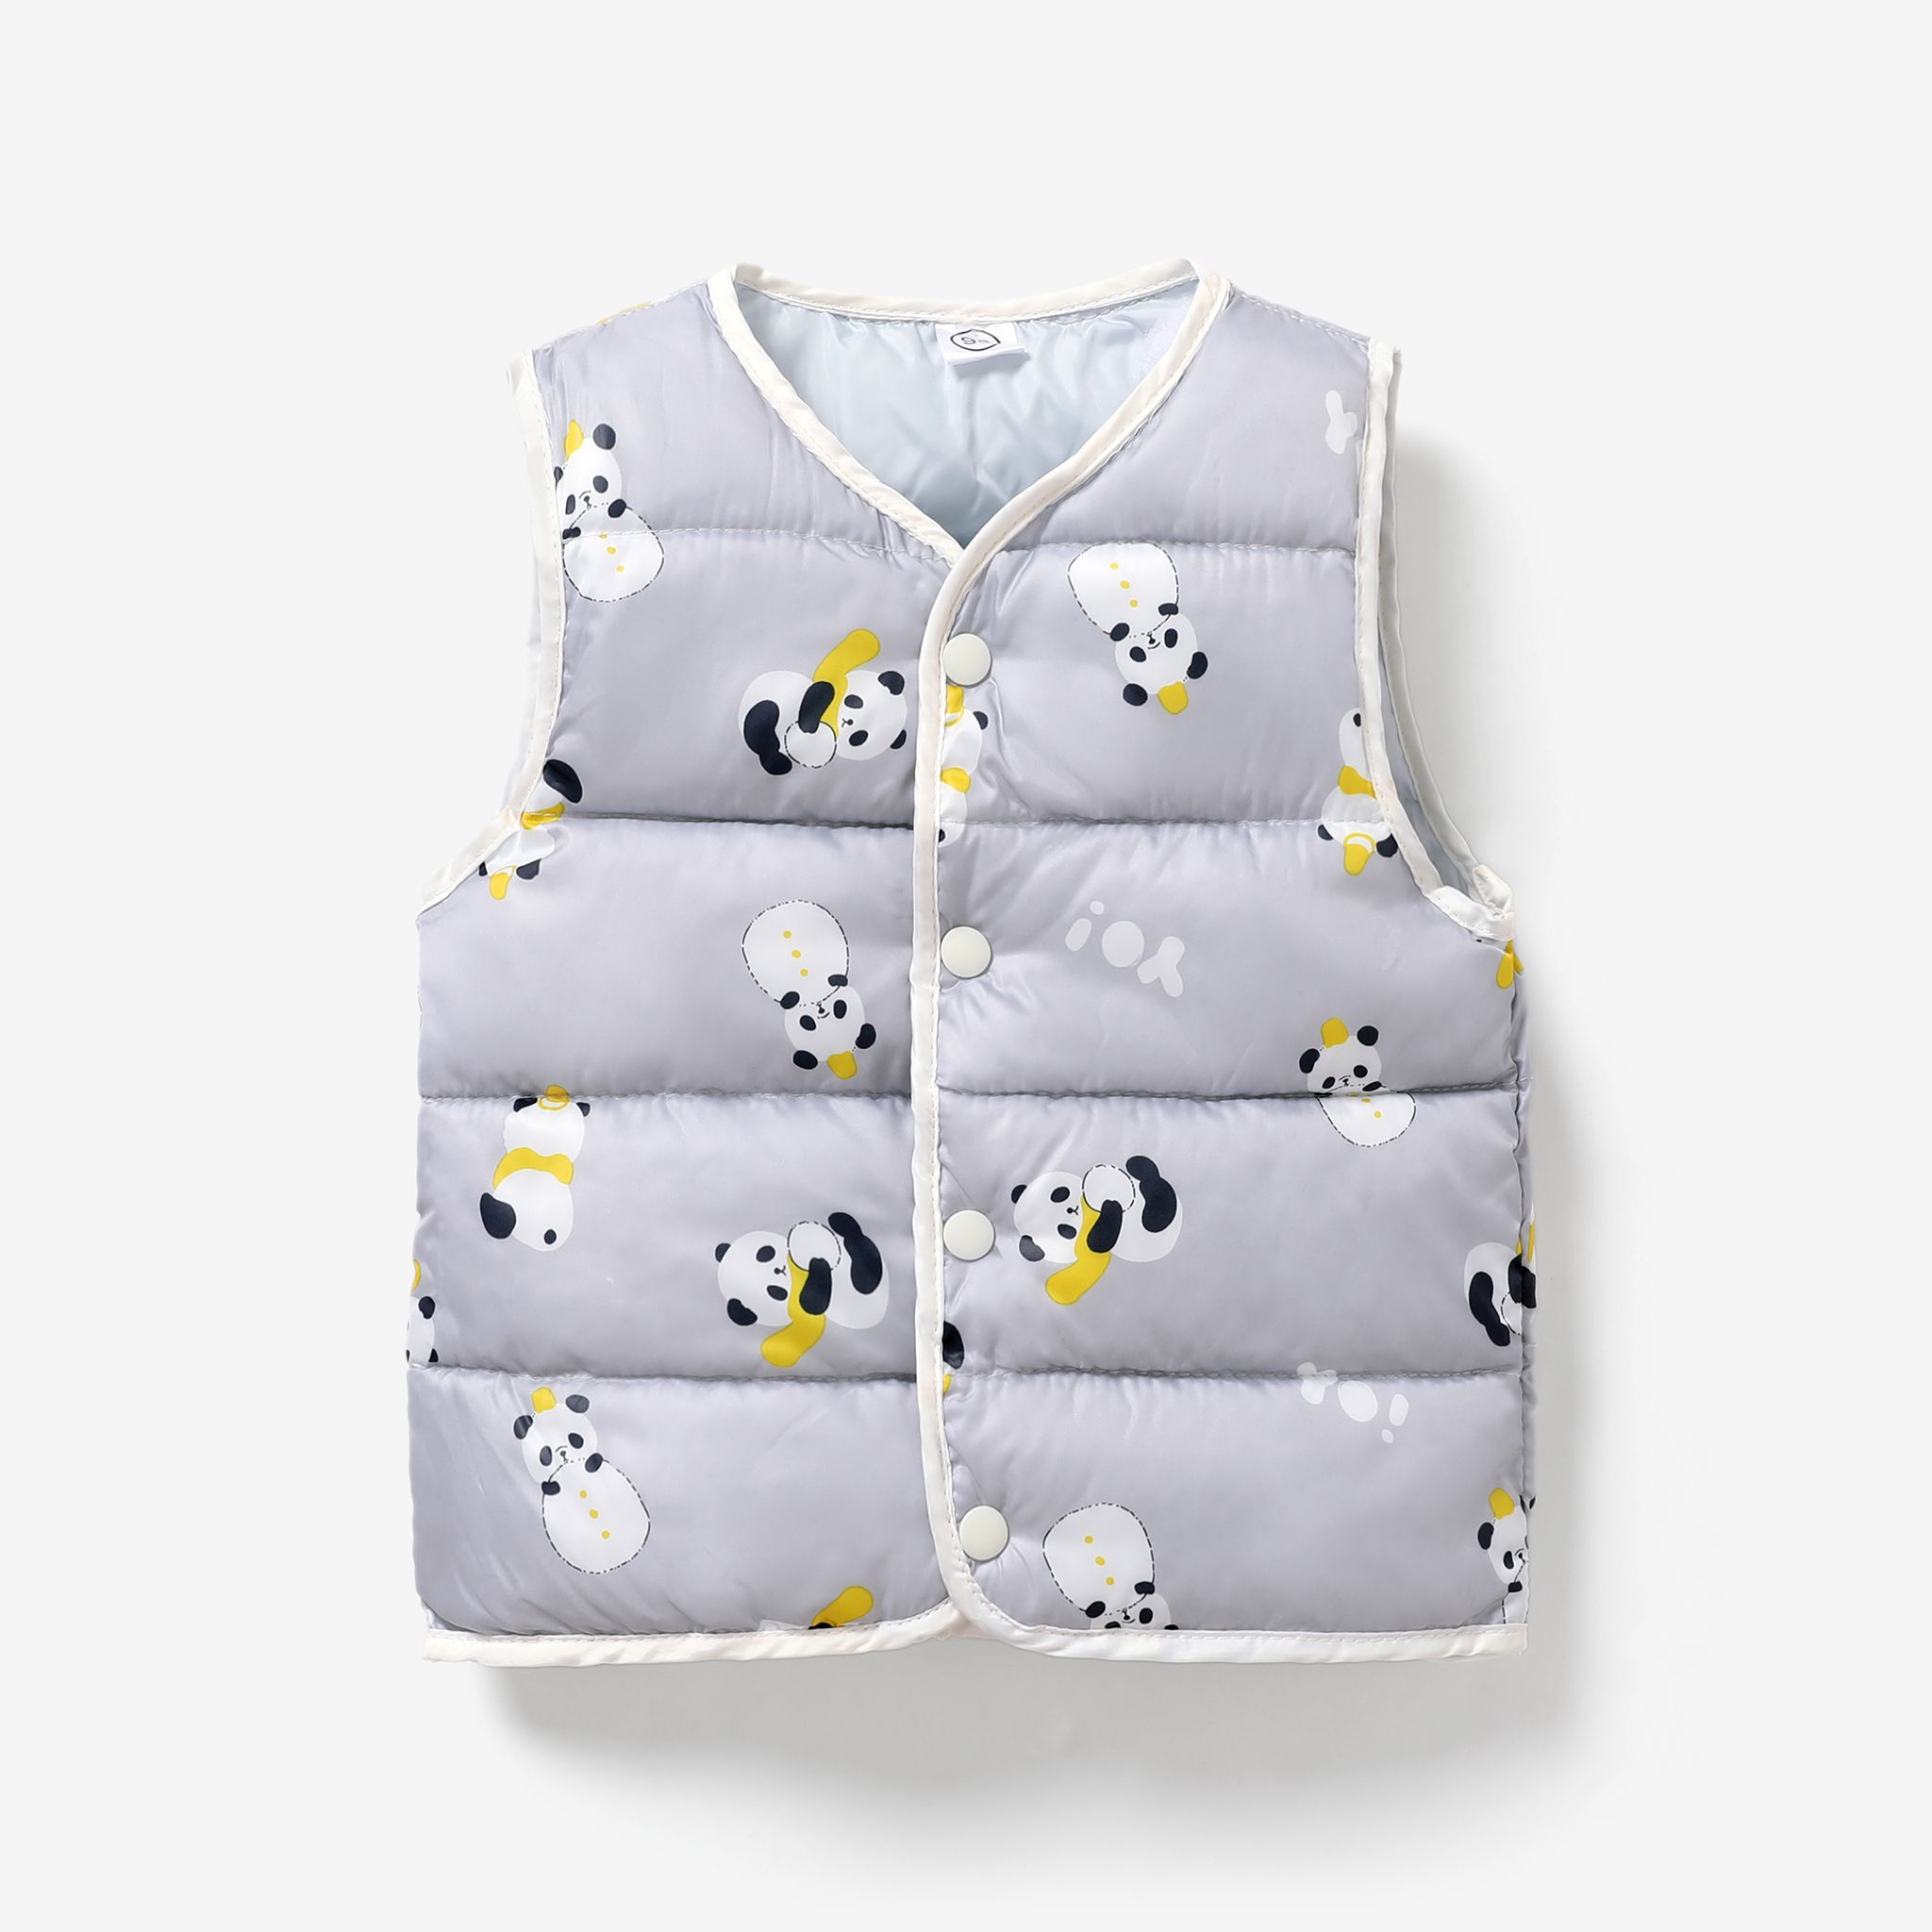 Bébé / Tout-petit Fille / Garçon Animal Enfantin / Fruit / Manteau De Coton à Motif Floral